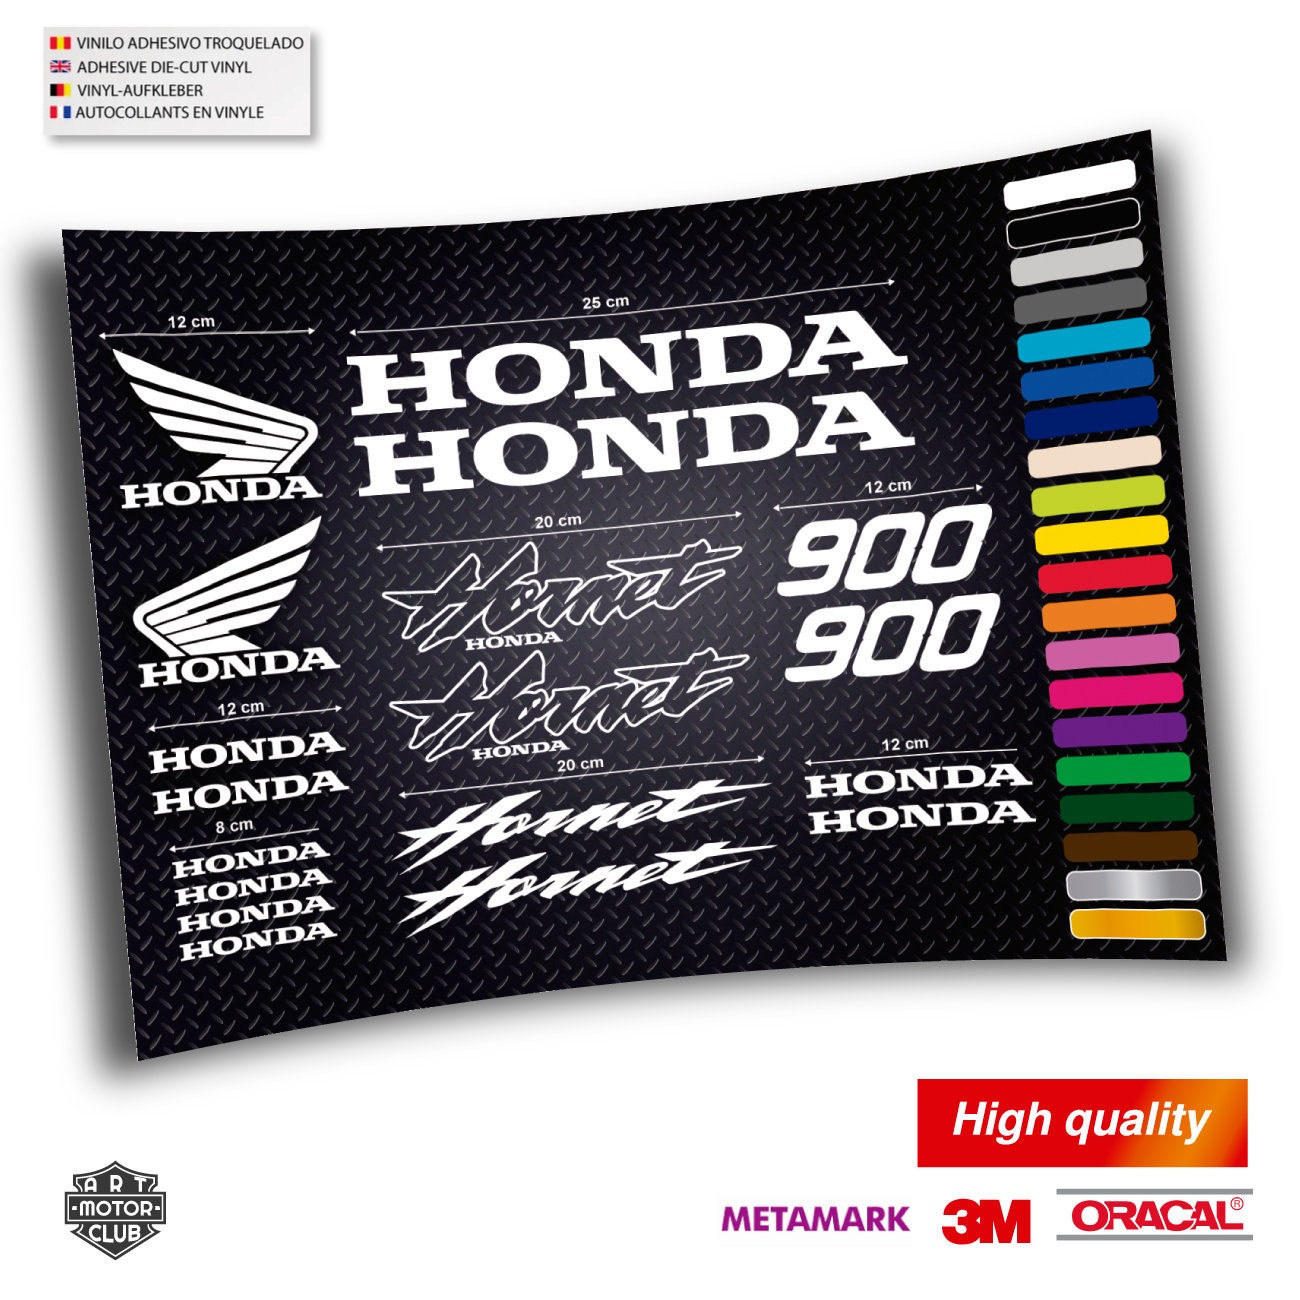 Honda hornet 900 for sale  